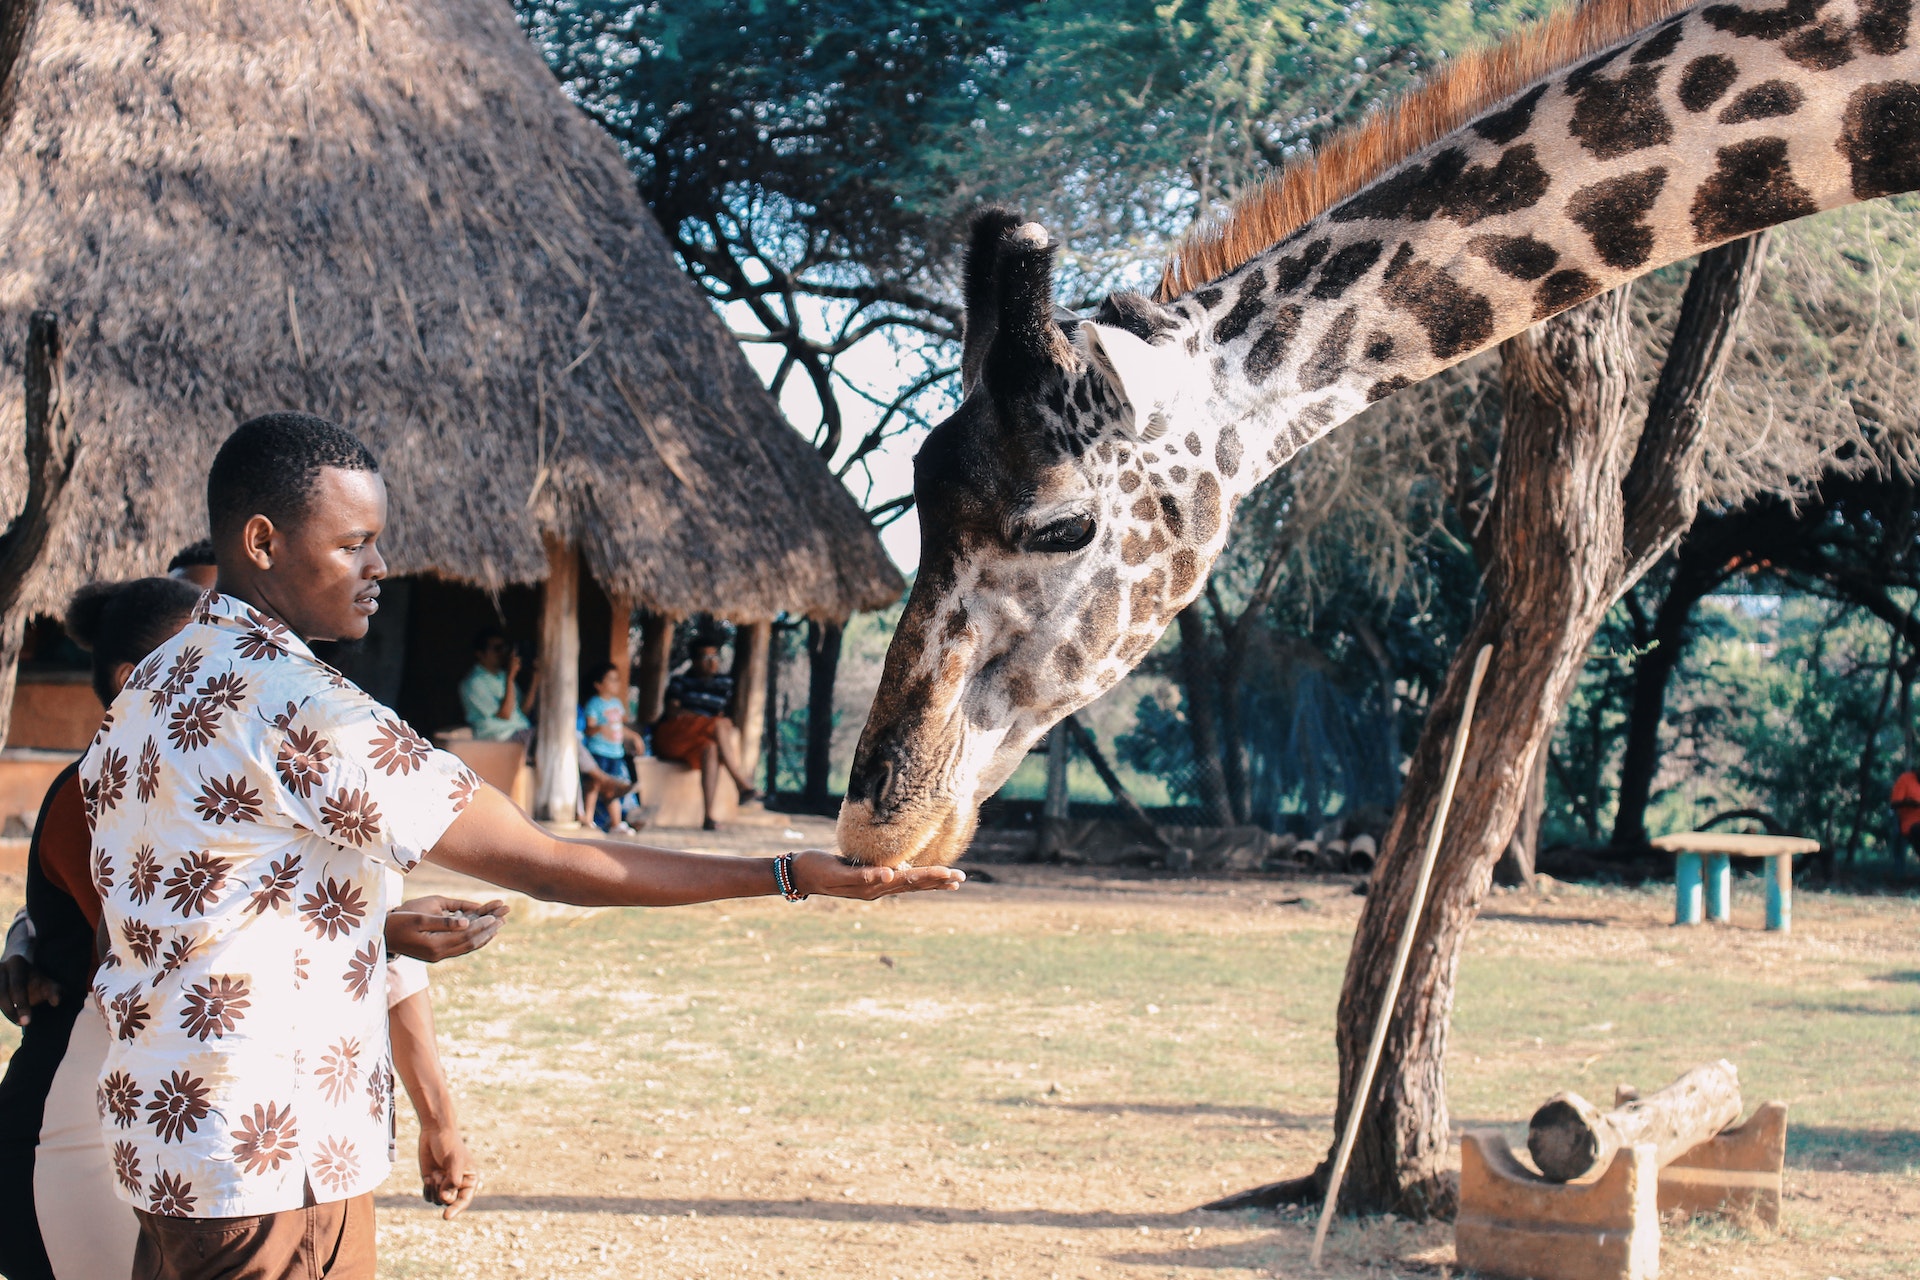 Man feeding a giraffe